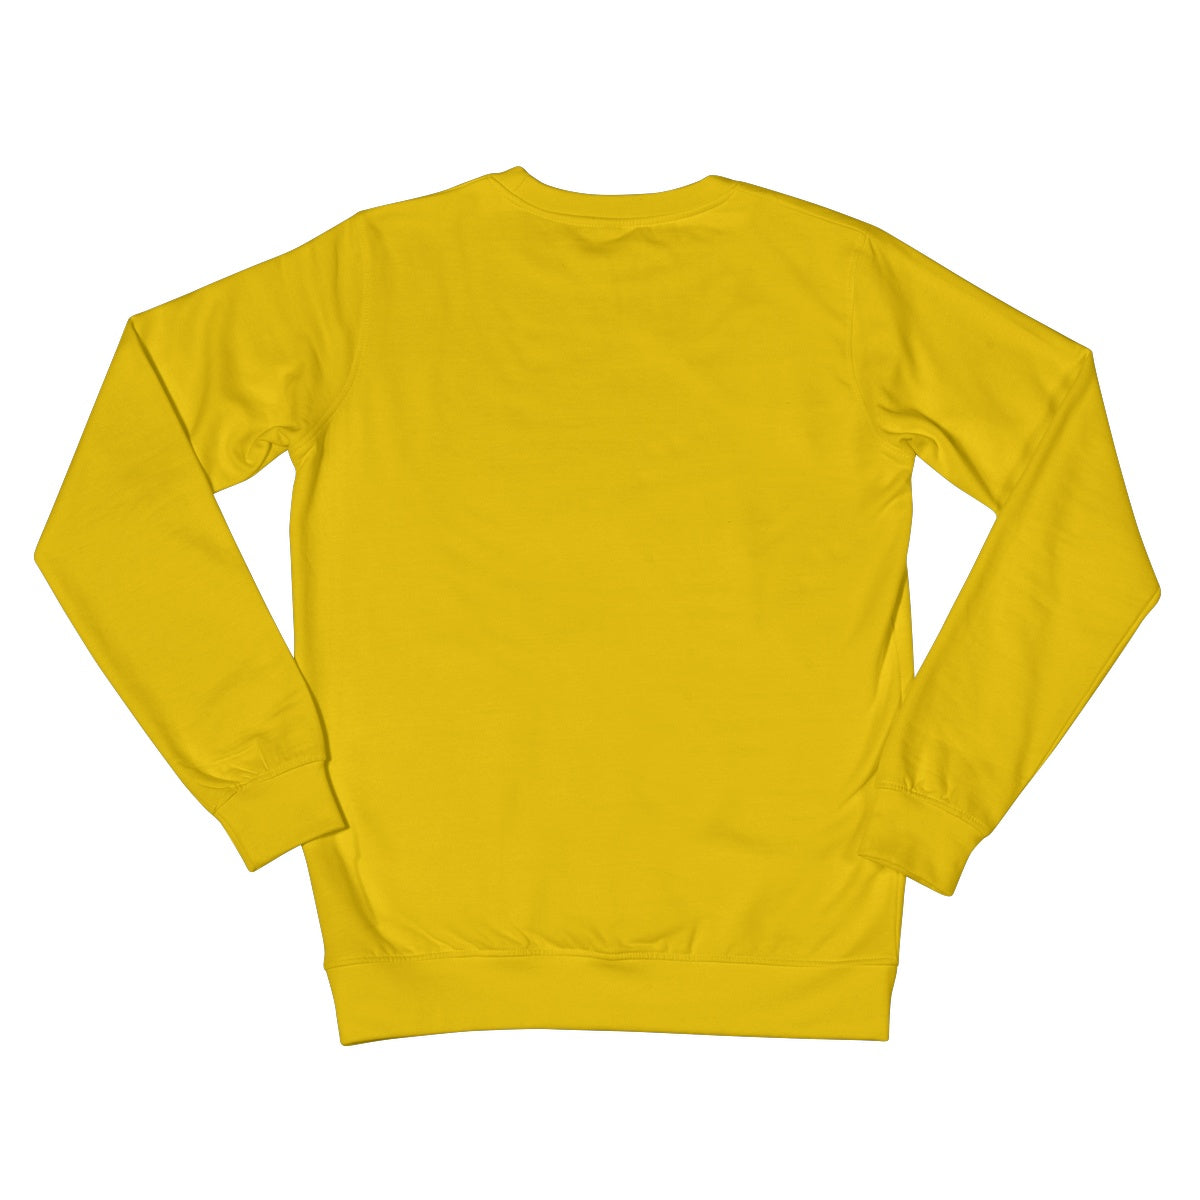 Diatom, Green Crew Neck Sweatshirt